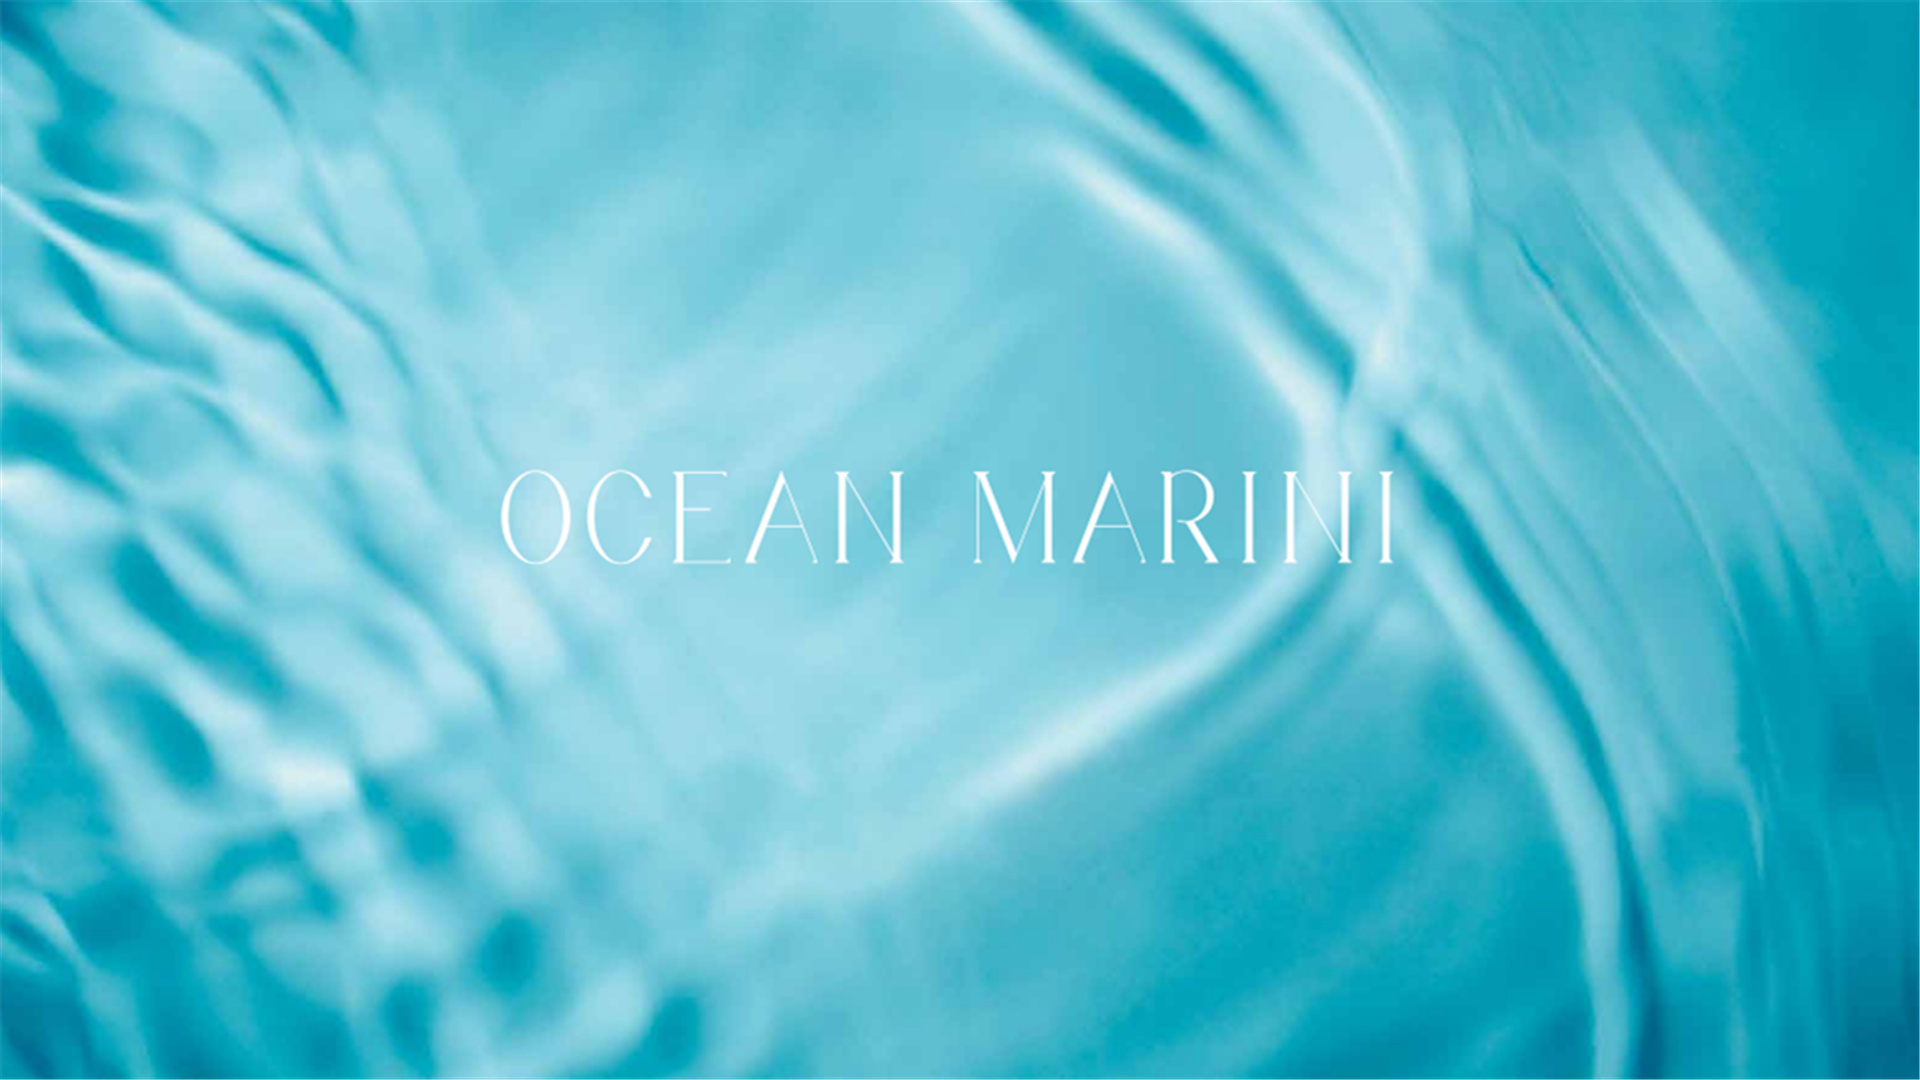 MARINI MARINI - OCEAN MARINI